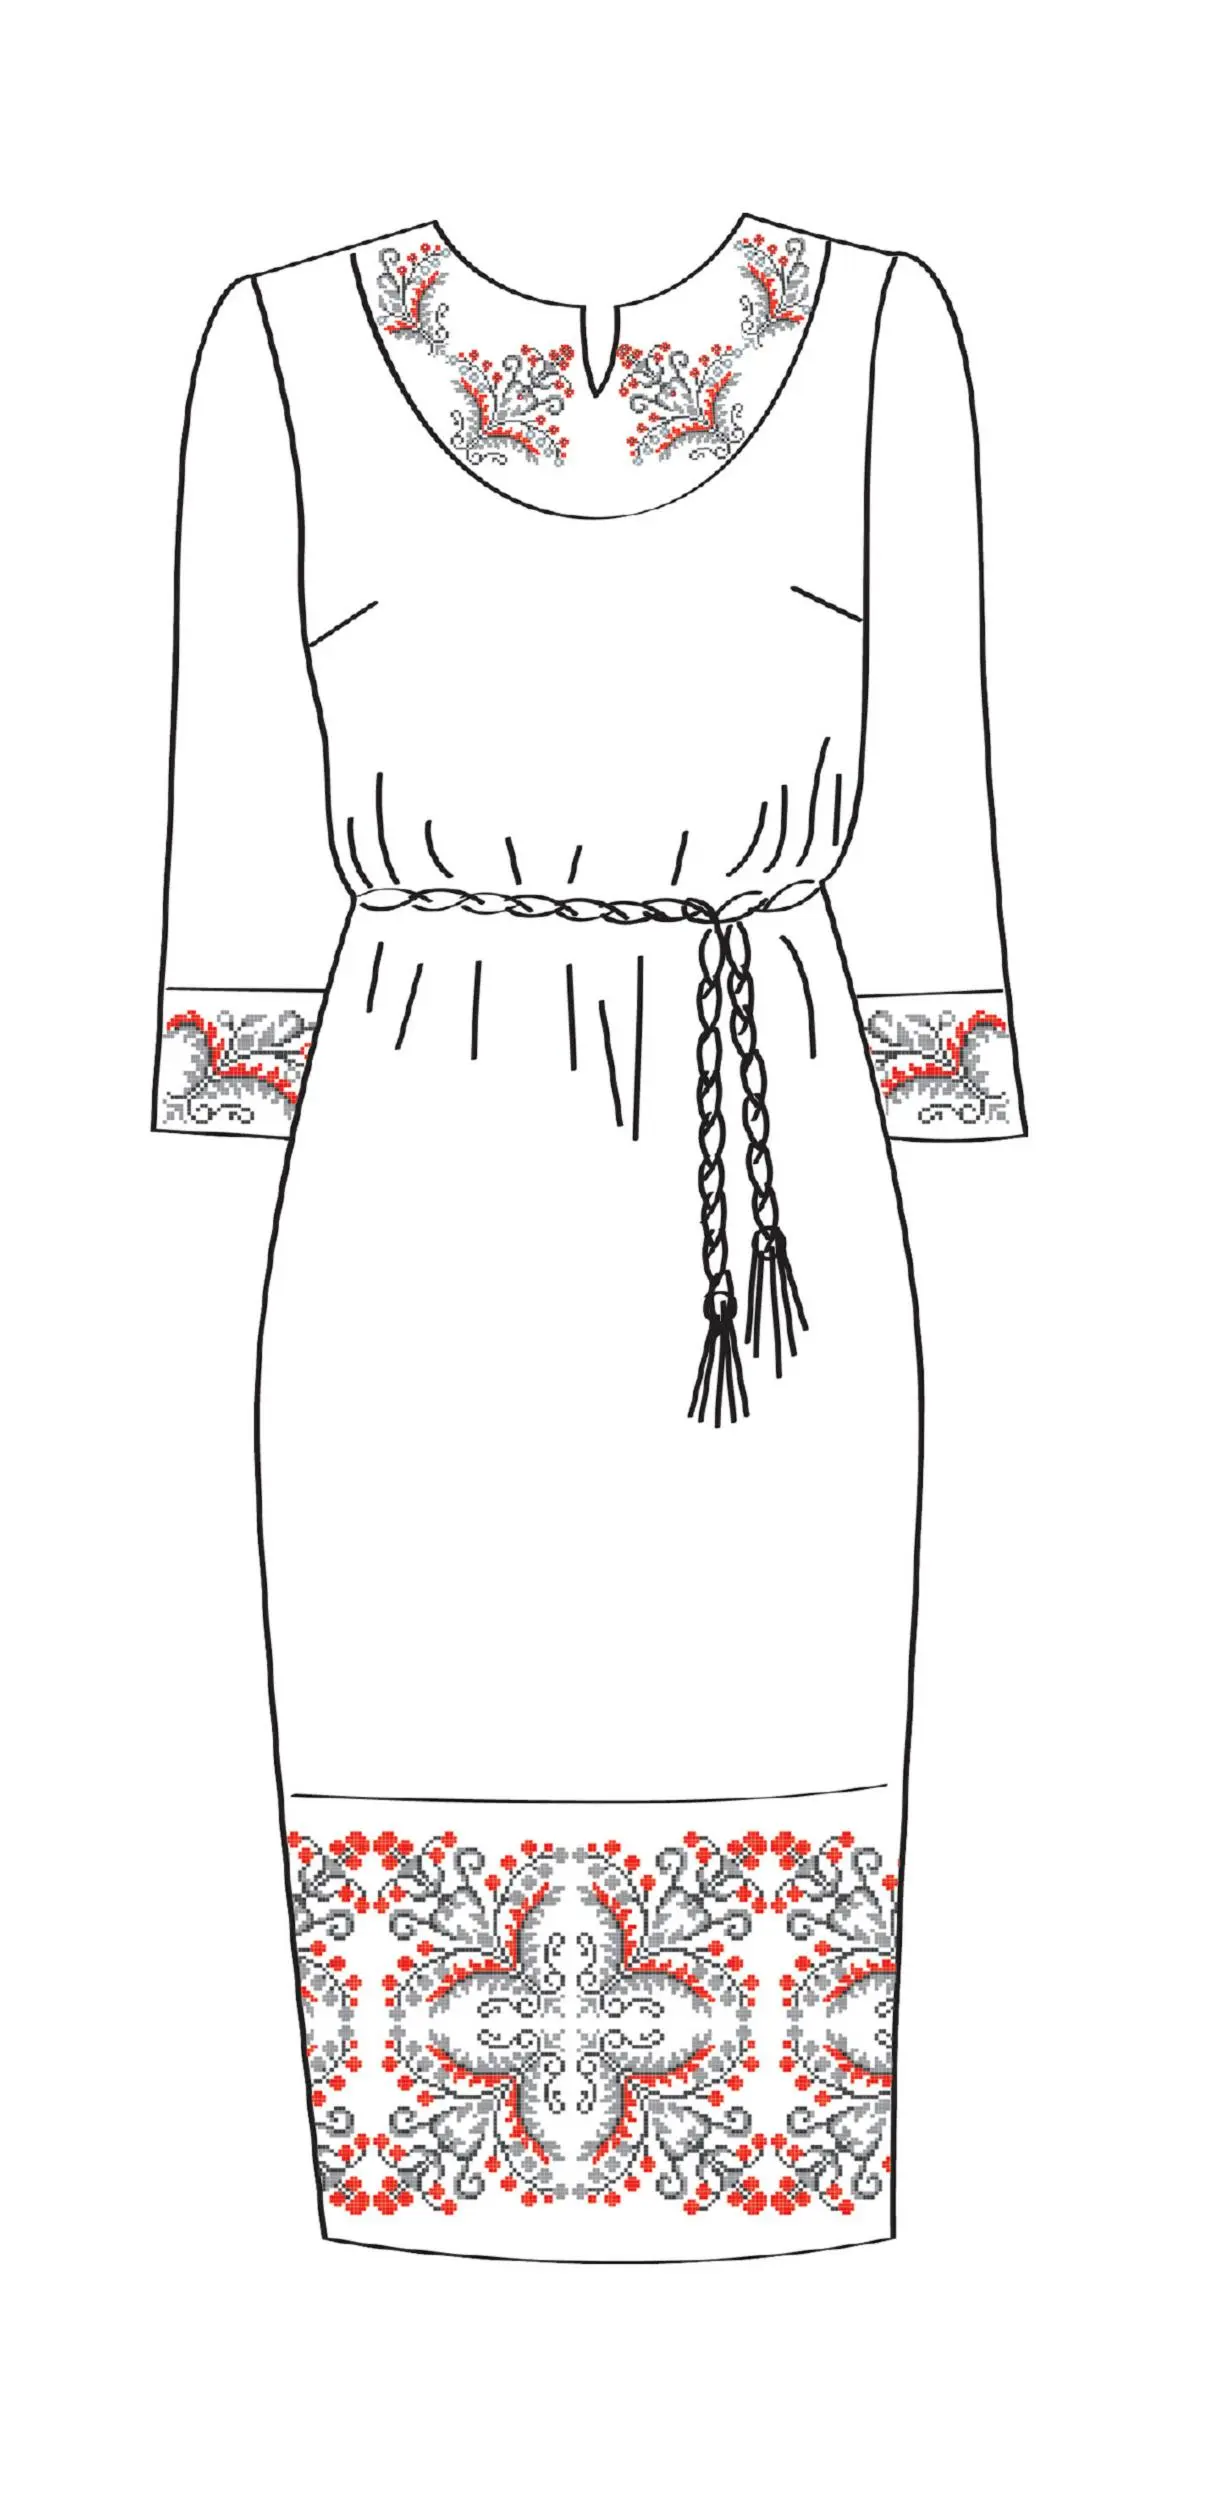 820-14/09 Плаття жіноче з поясом, біле, розмір 52